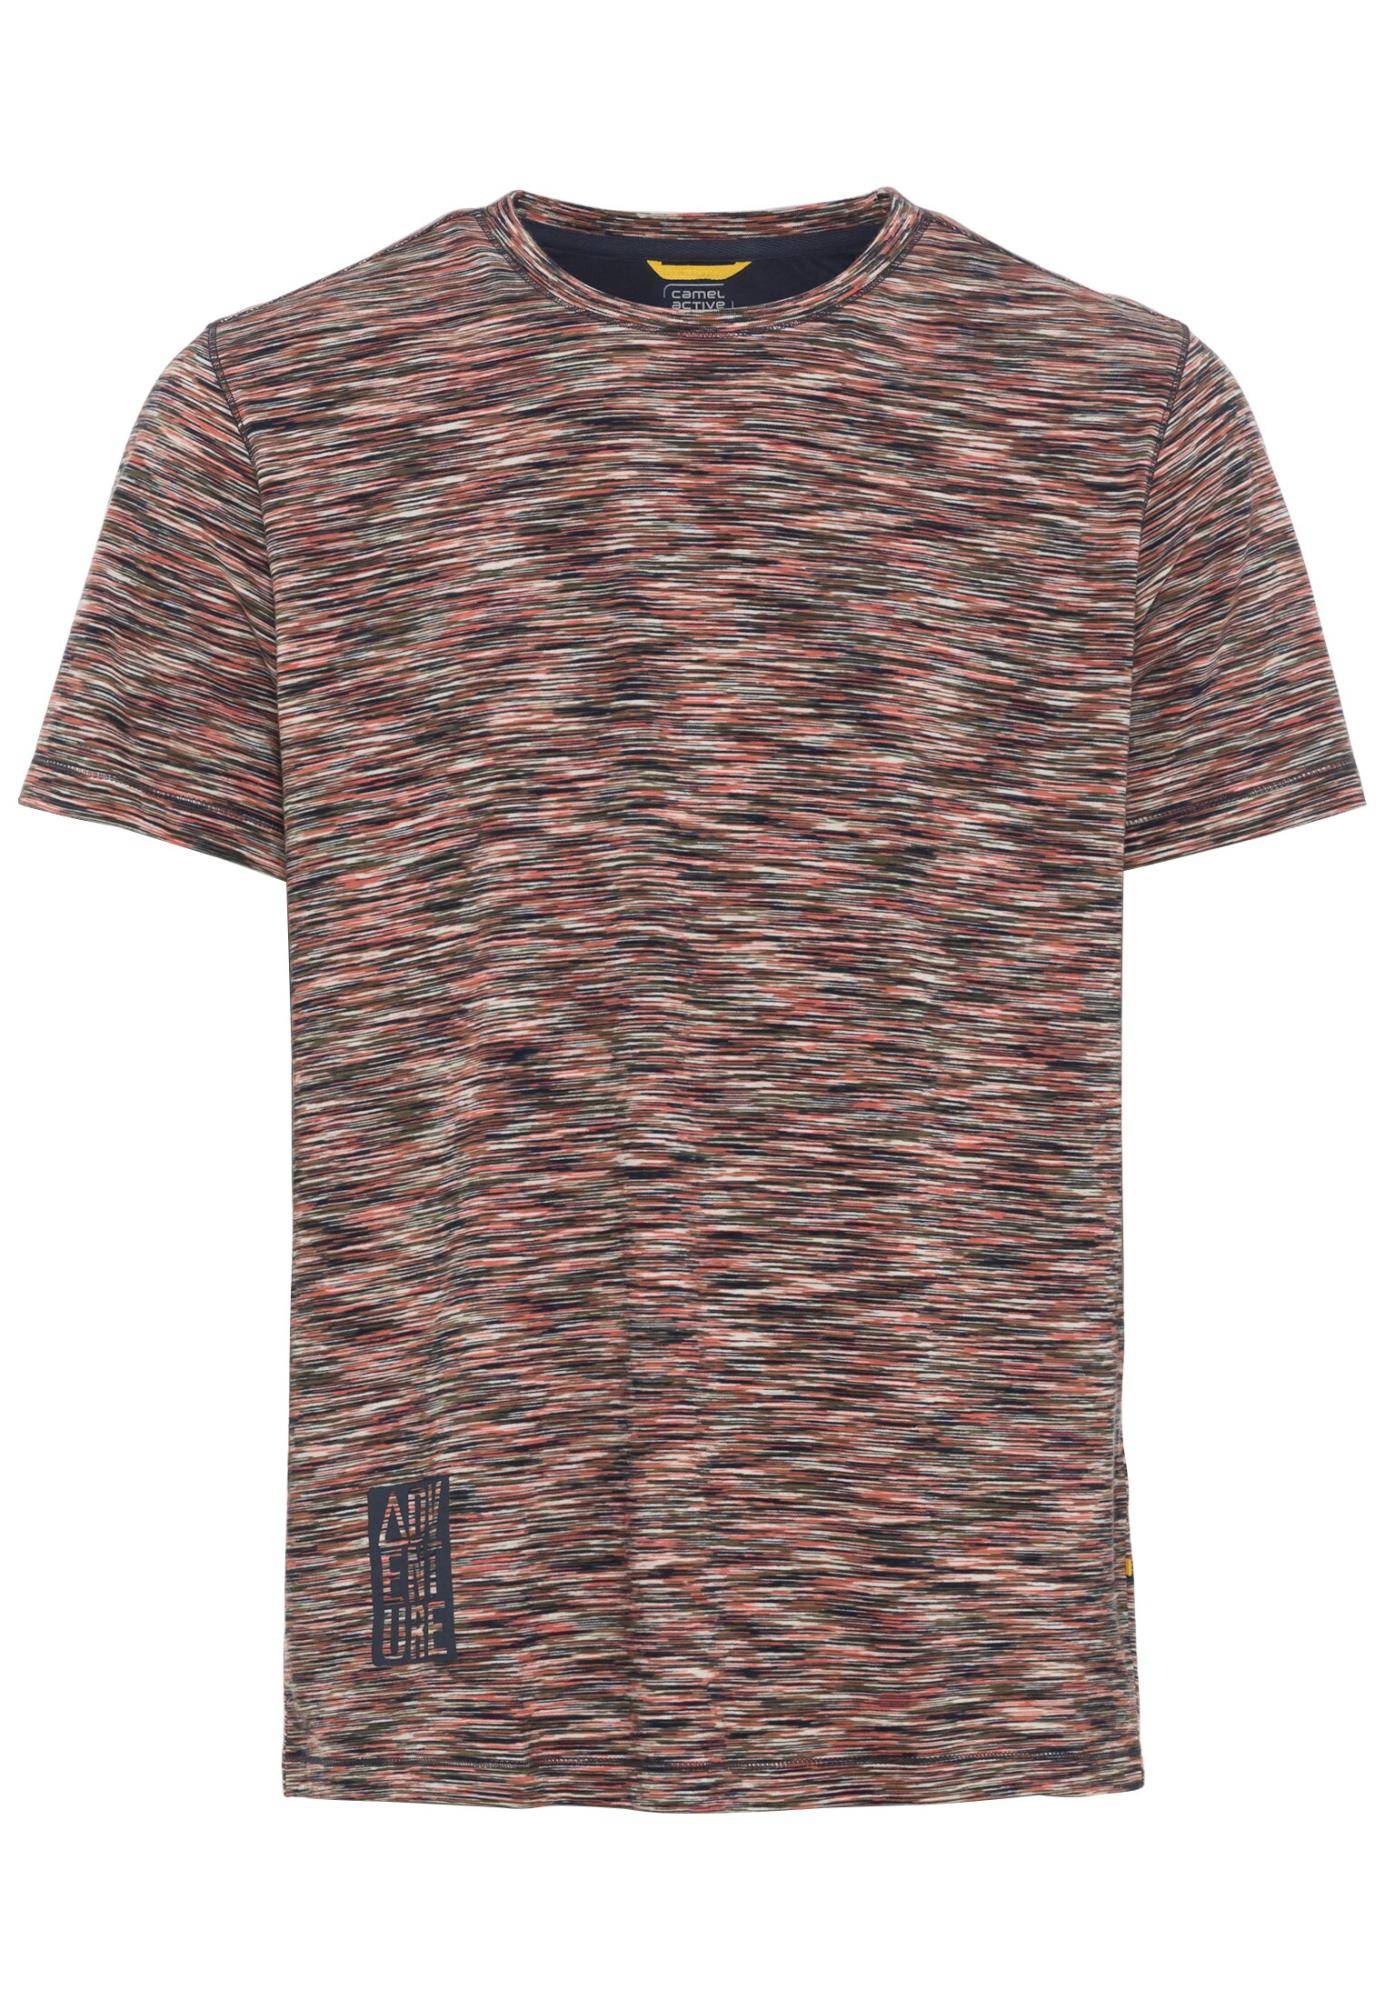 Мужская футболка Camel Active, коралловая, цвет коралловый, размер 48